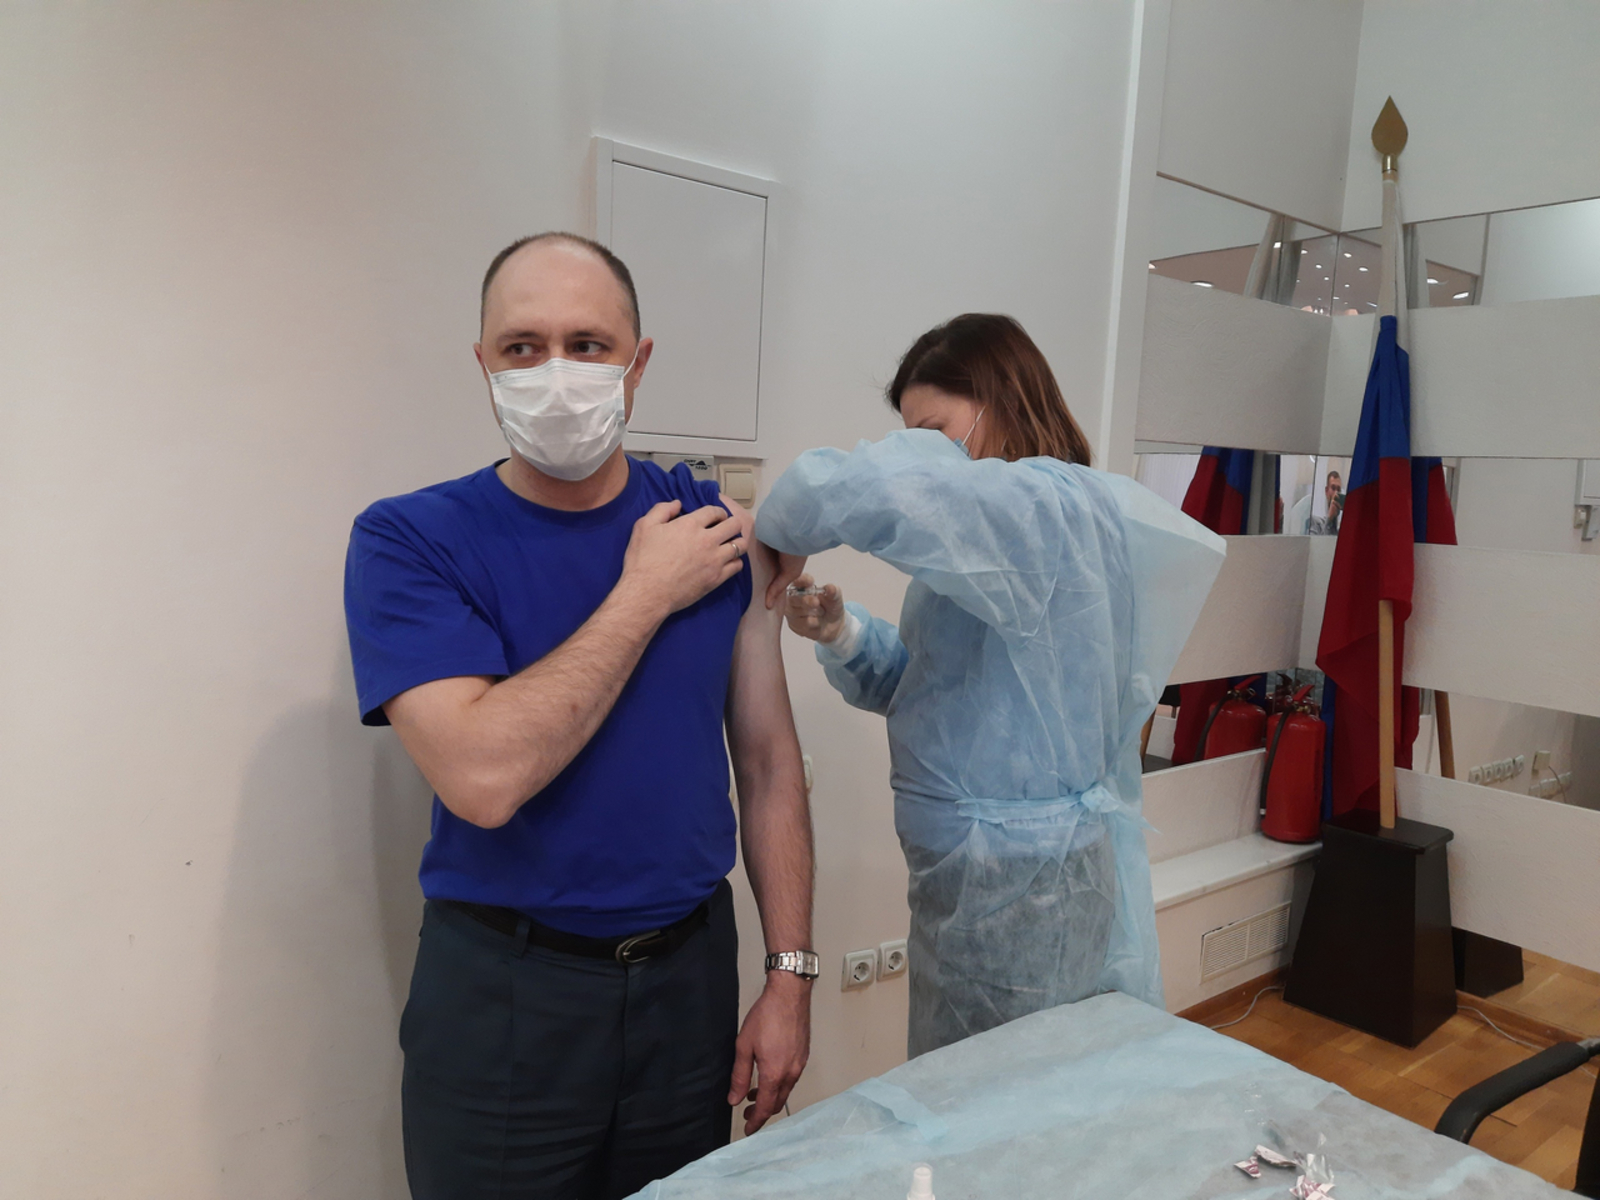 Мнение о необходимости прививки от коронавирусной инфекции высказал житель с. Миловка Уфимского района Башкирии